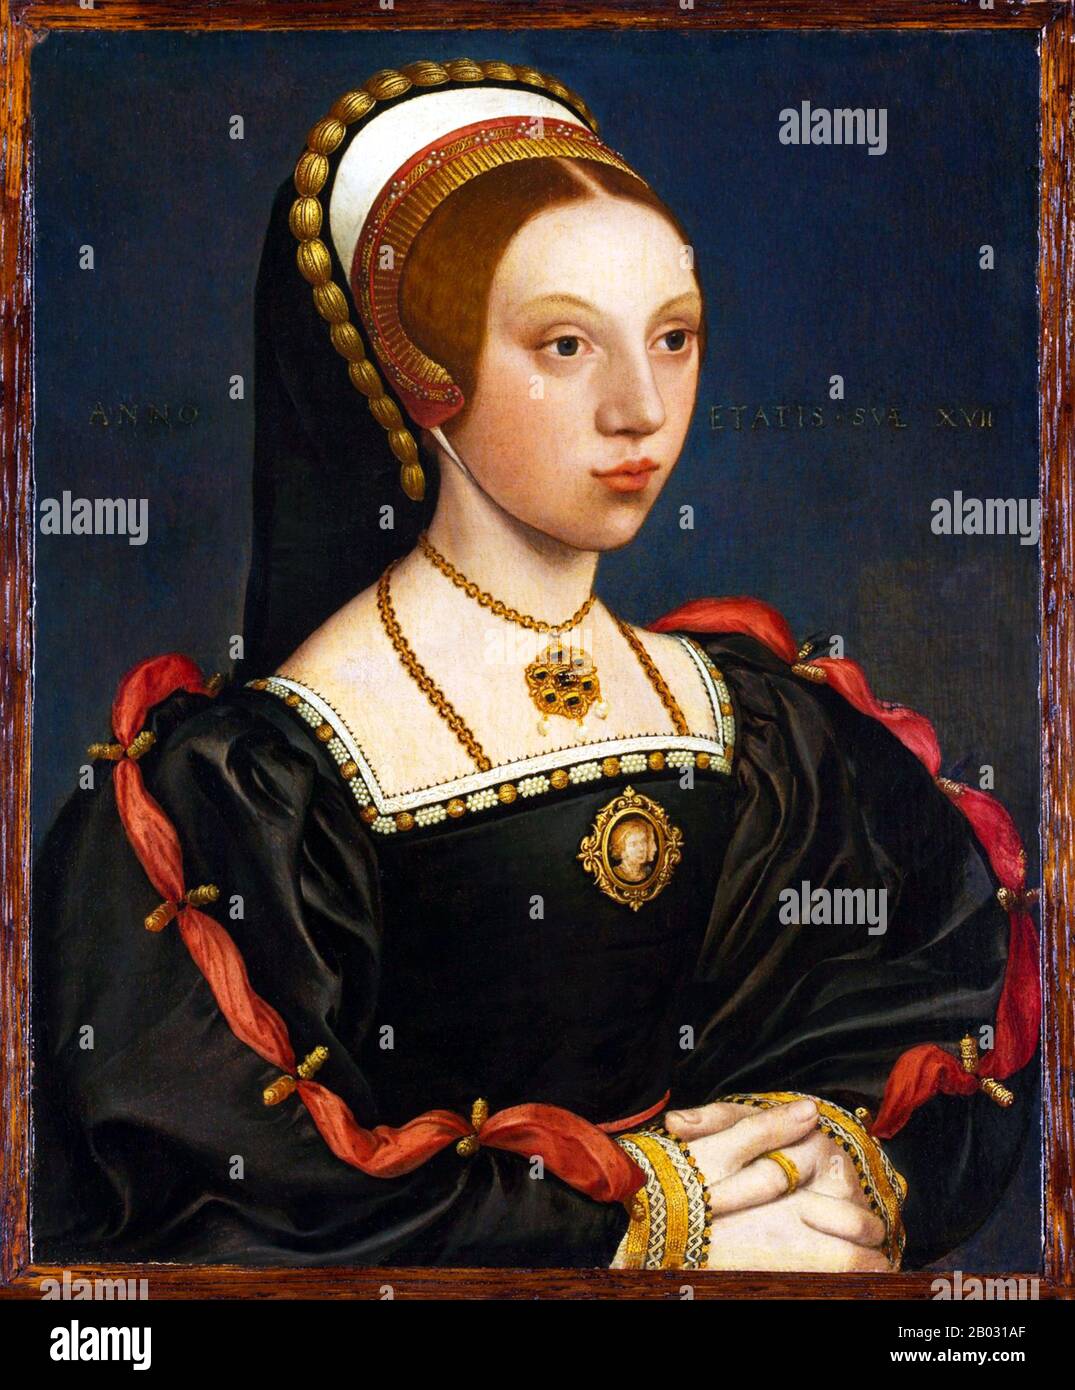 Catherine Howard (c.1521 – 13 febbraio 1542) fu Regina d'Inghilterra dal 1540 al 1541, come quinta moglie di Enrico VIII Caterina sposò Enrico VIII il 28 luglio 1540, a Oatlands Palace, nel Surrey, quasi subito dopo l'annullamento del suo matrimonio con Anna di Cleves. Caterina fu decapitata dopo meno di due anni di matrimonio con Enrico per motivi di tradimento commettendo adulterio mentre era sposata con il Re. Foto Stock